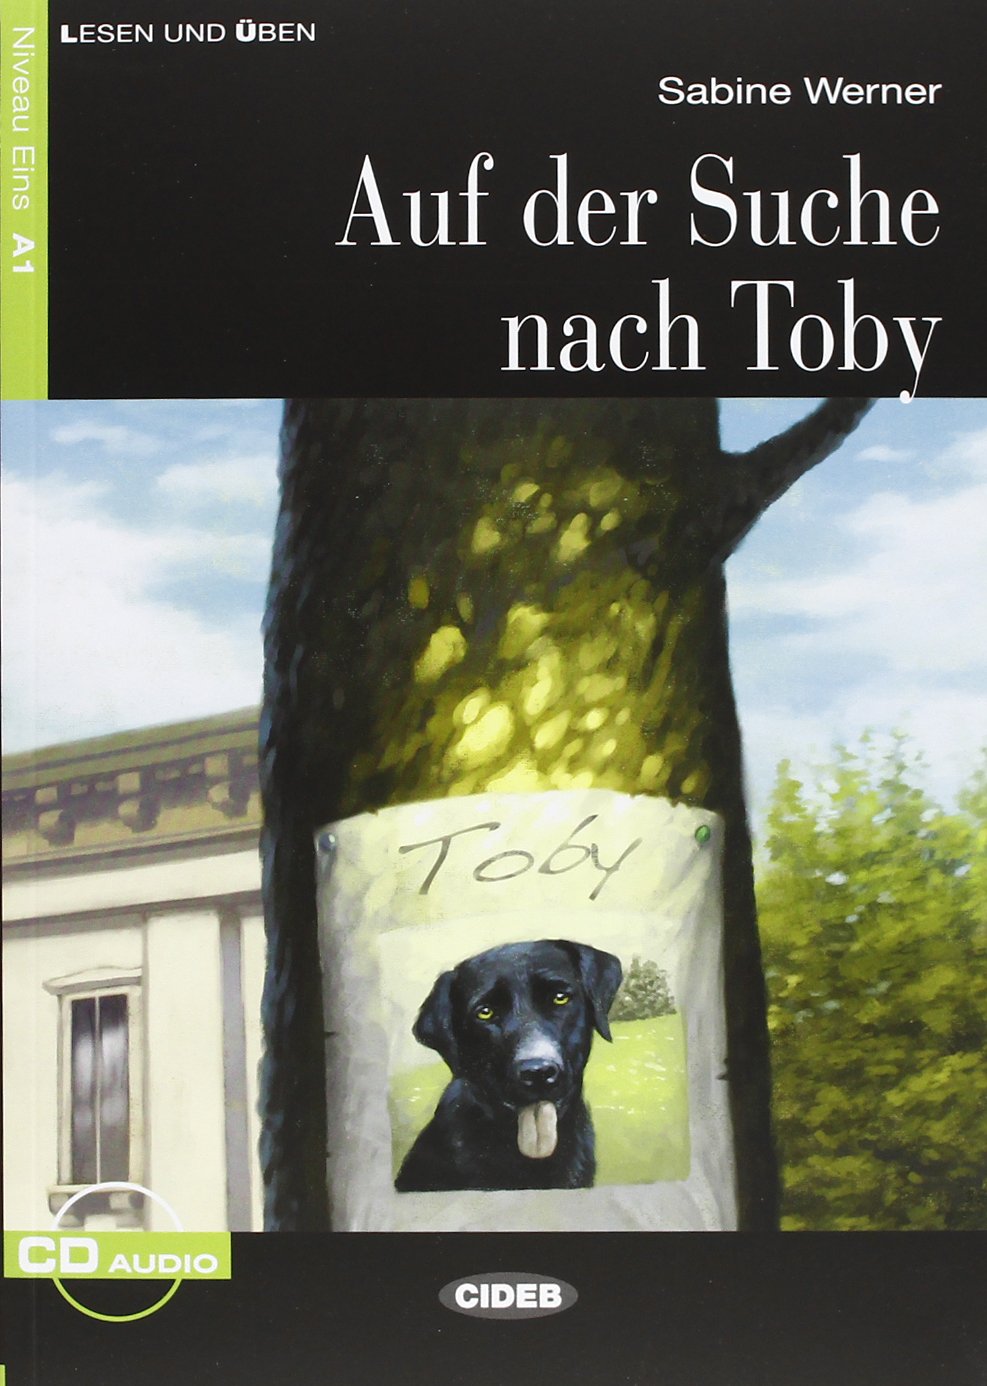  Auf der Suche nach Toby 